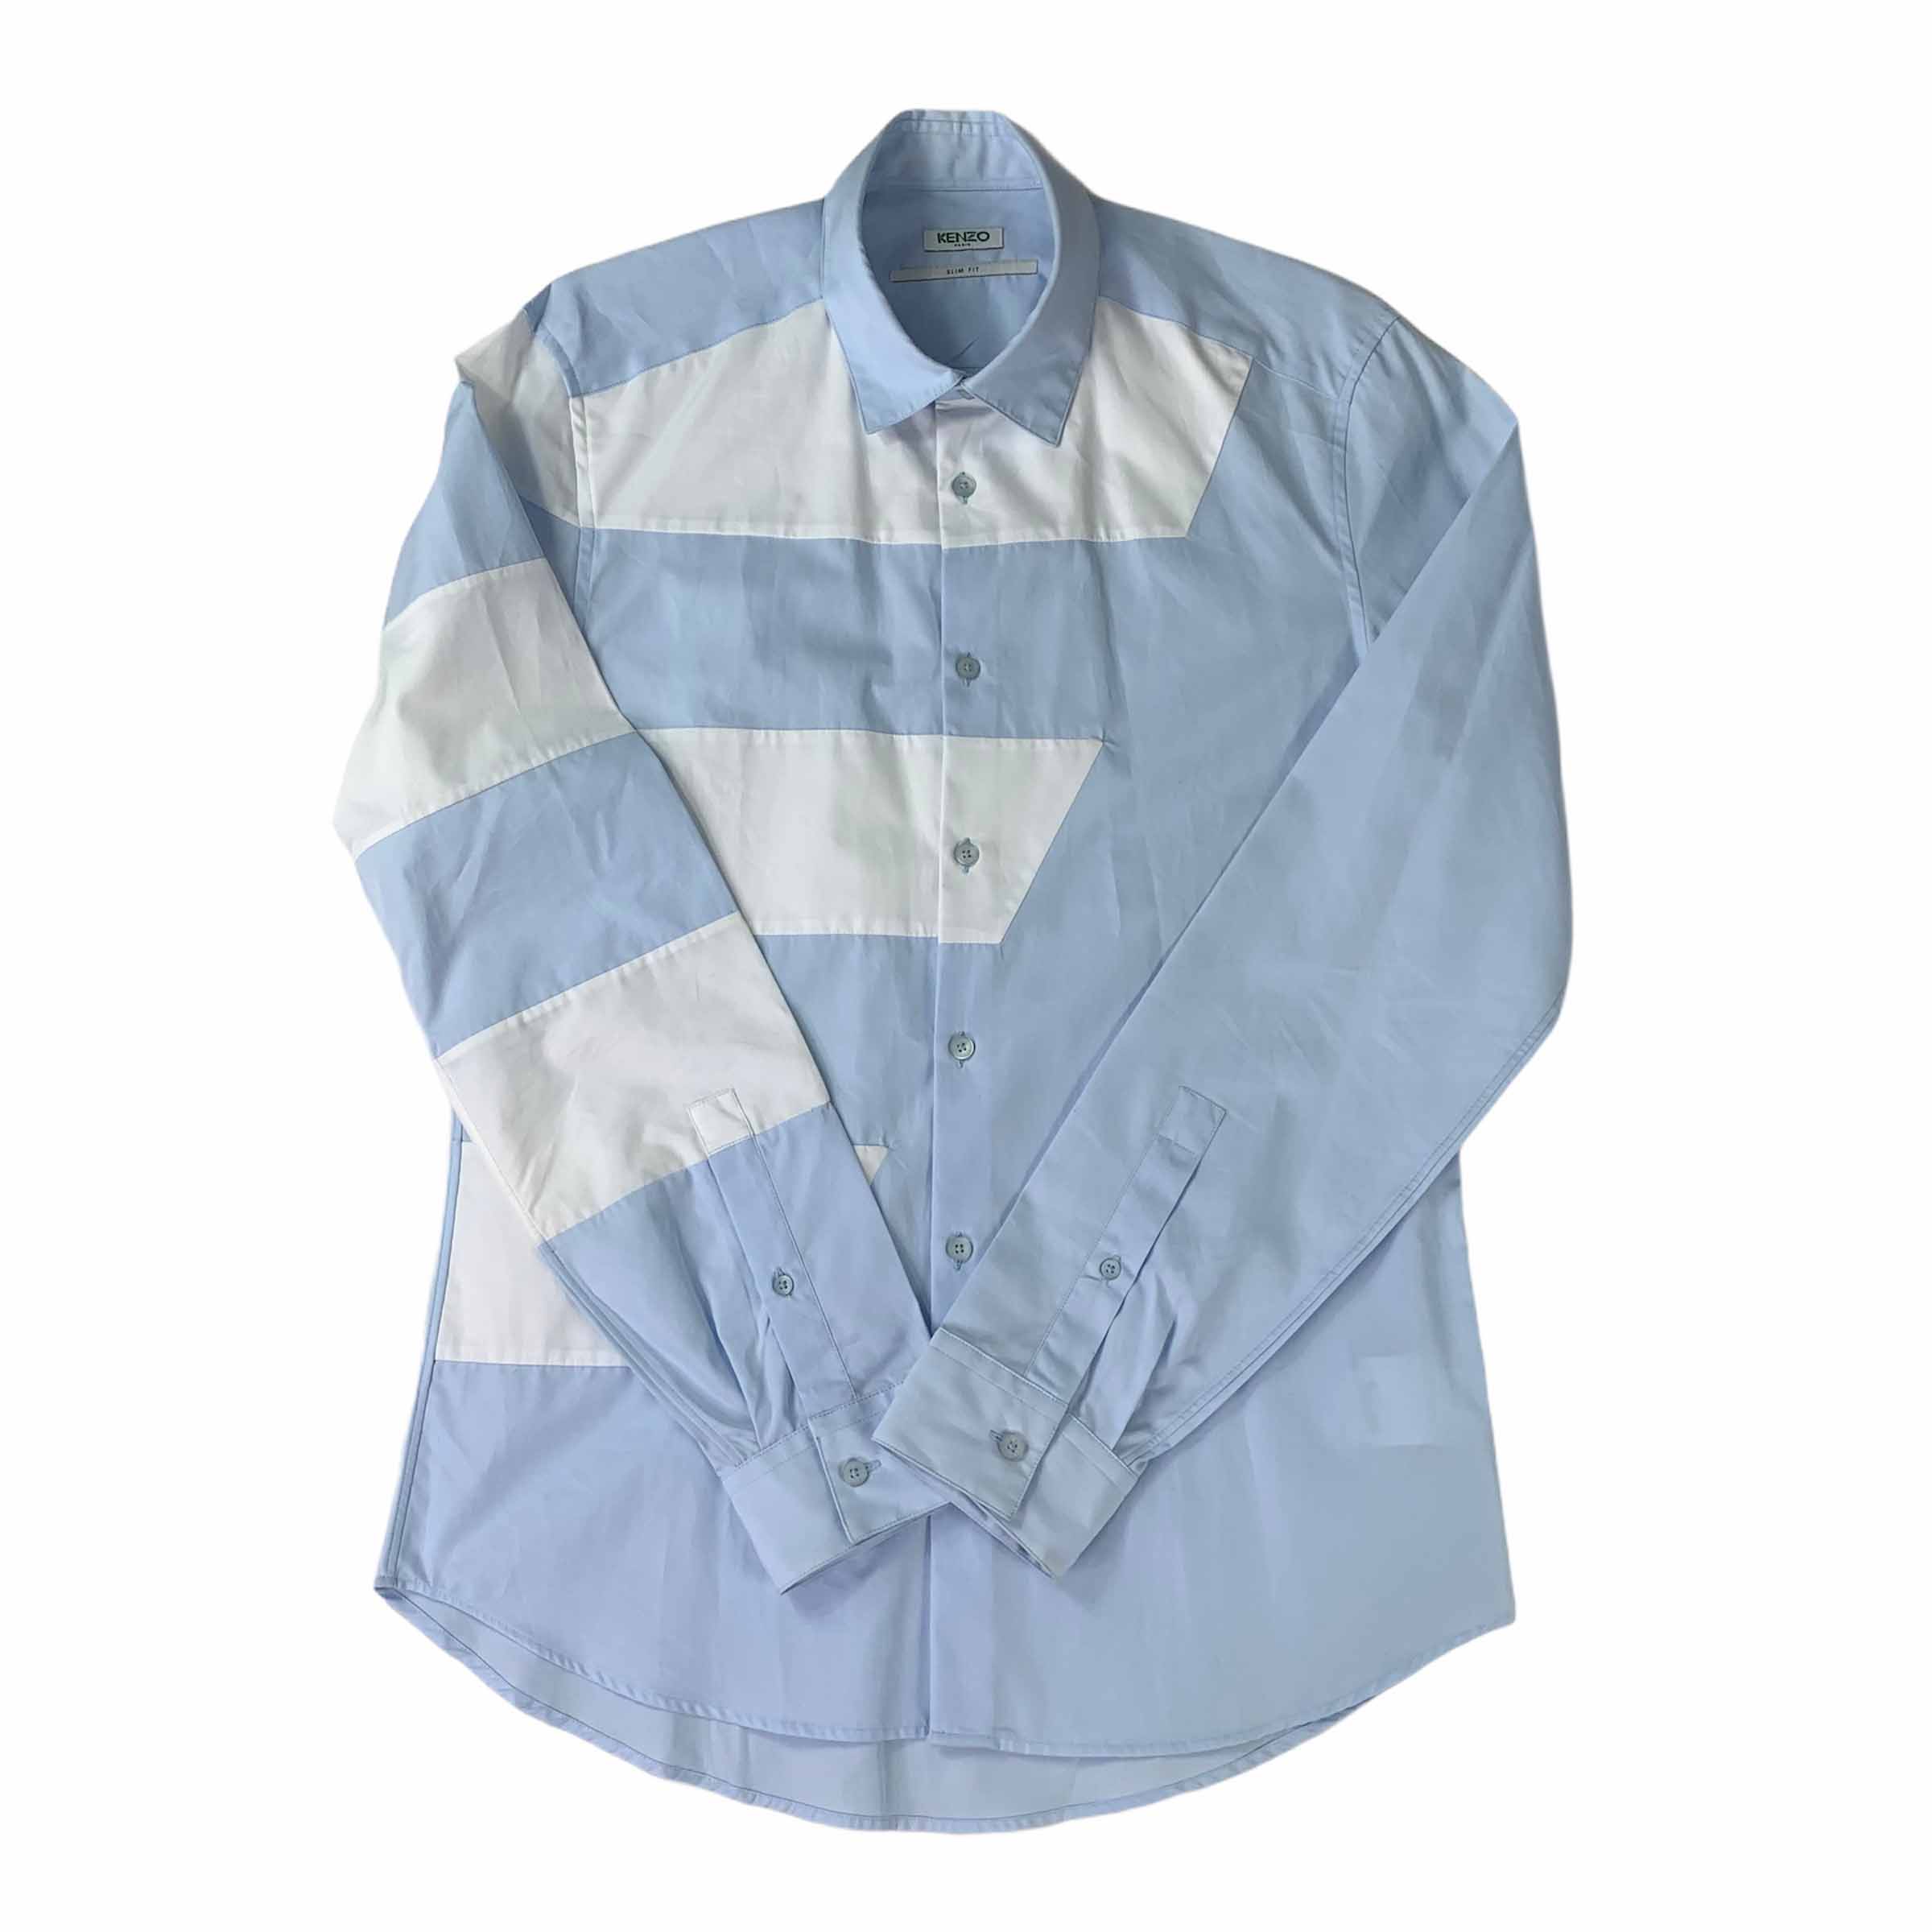 [Kenzo] Asymmetry Shirt - Size 40